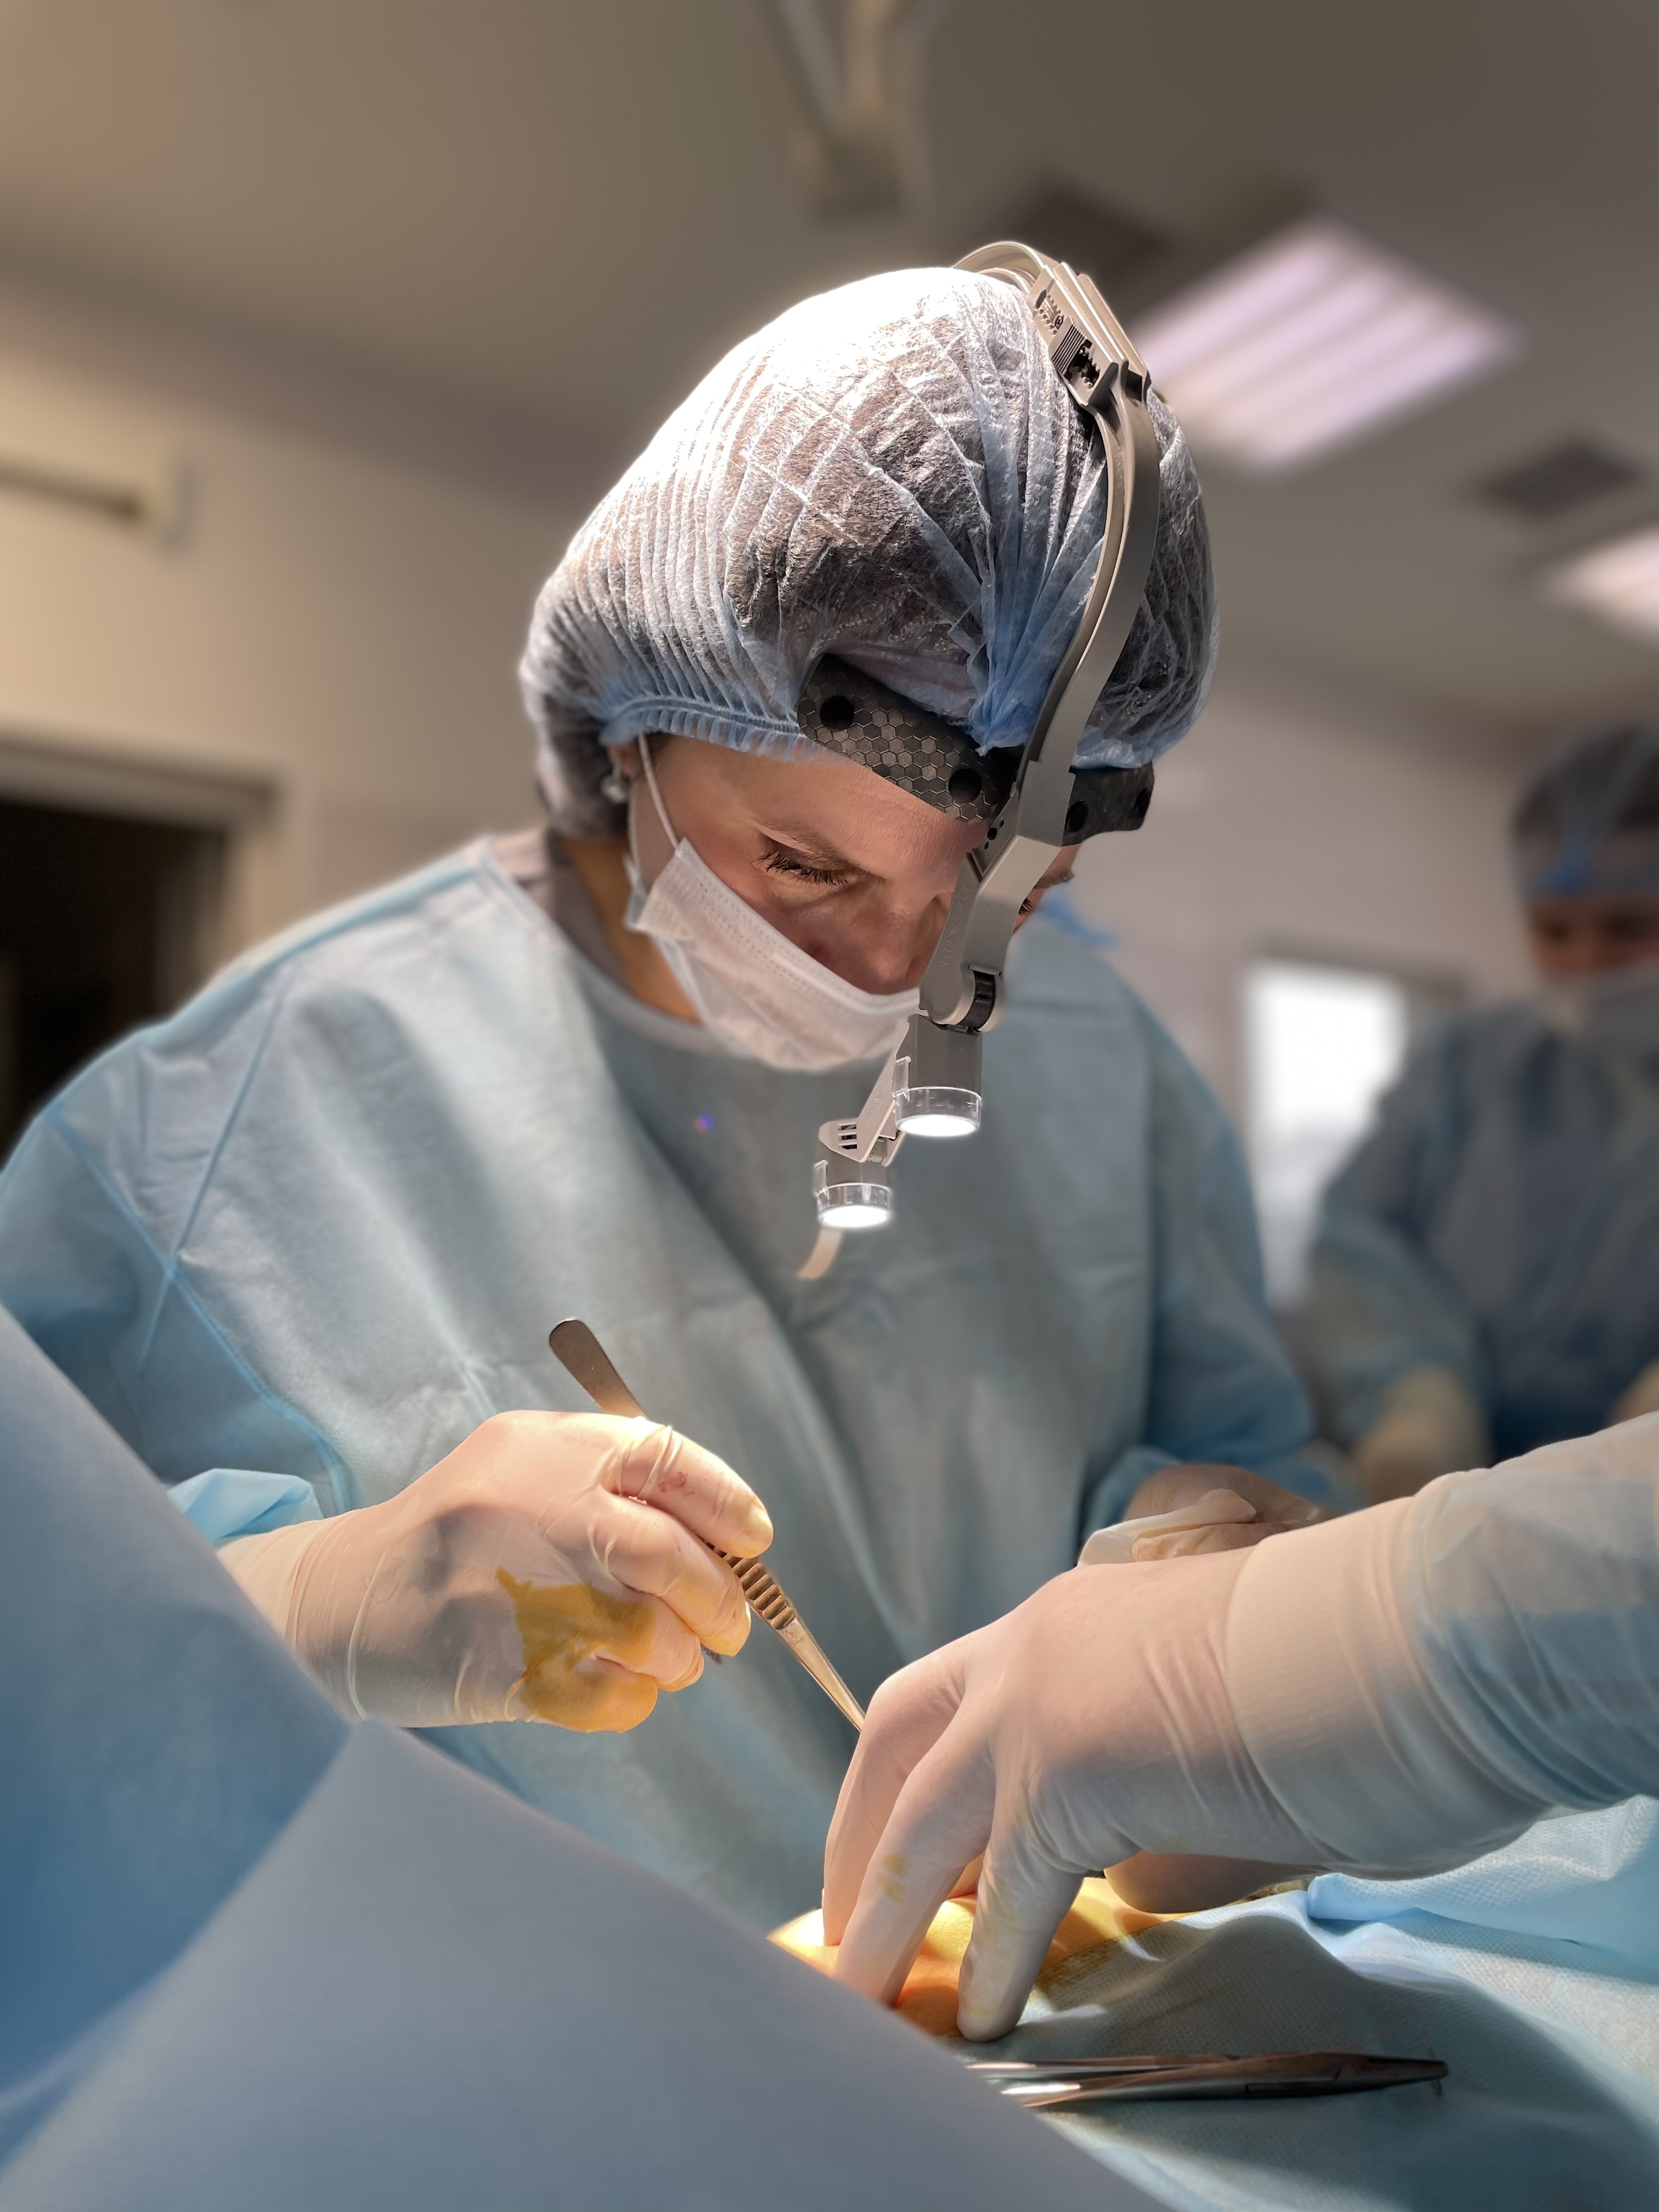  «Уменьшение груди – это искусство»: самарский пластический хирург-маммолог о комплексных операциях молочной железы 